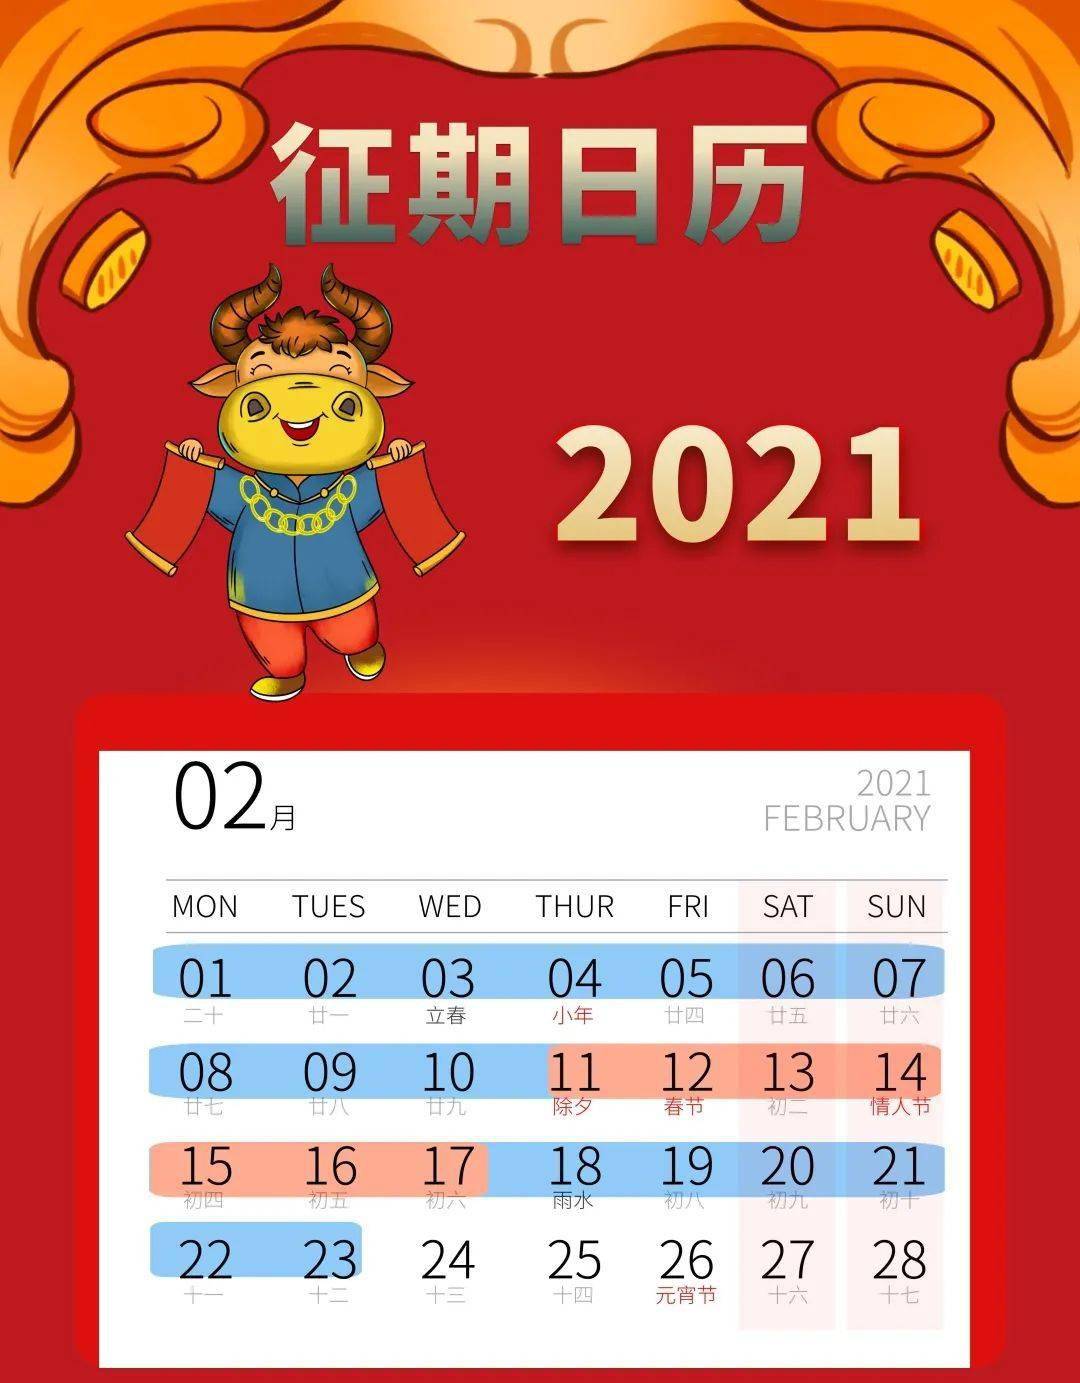 【征期日历】2021年2月征期日历提醒,请查收